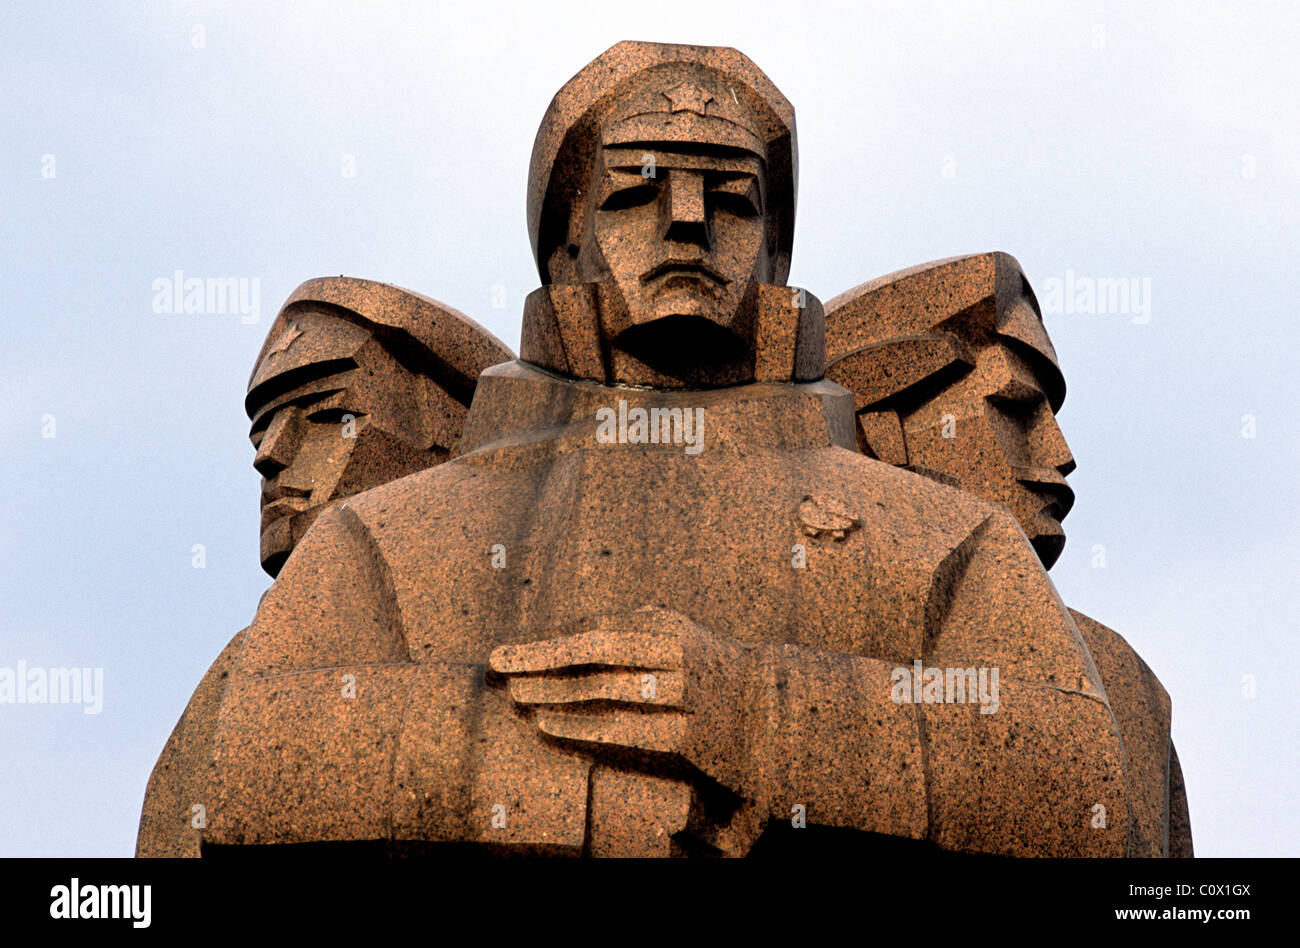 Riga ist die Hauptstadt Lettlands, eines der baltischen Staaten. Statue, die lettische schützen. Stockfoto